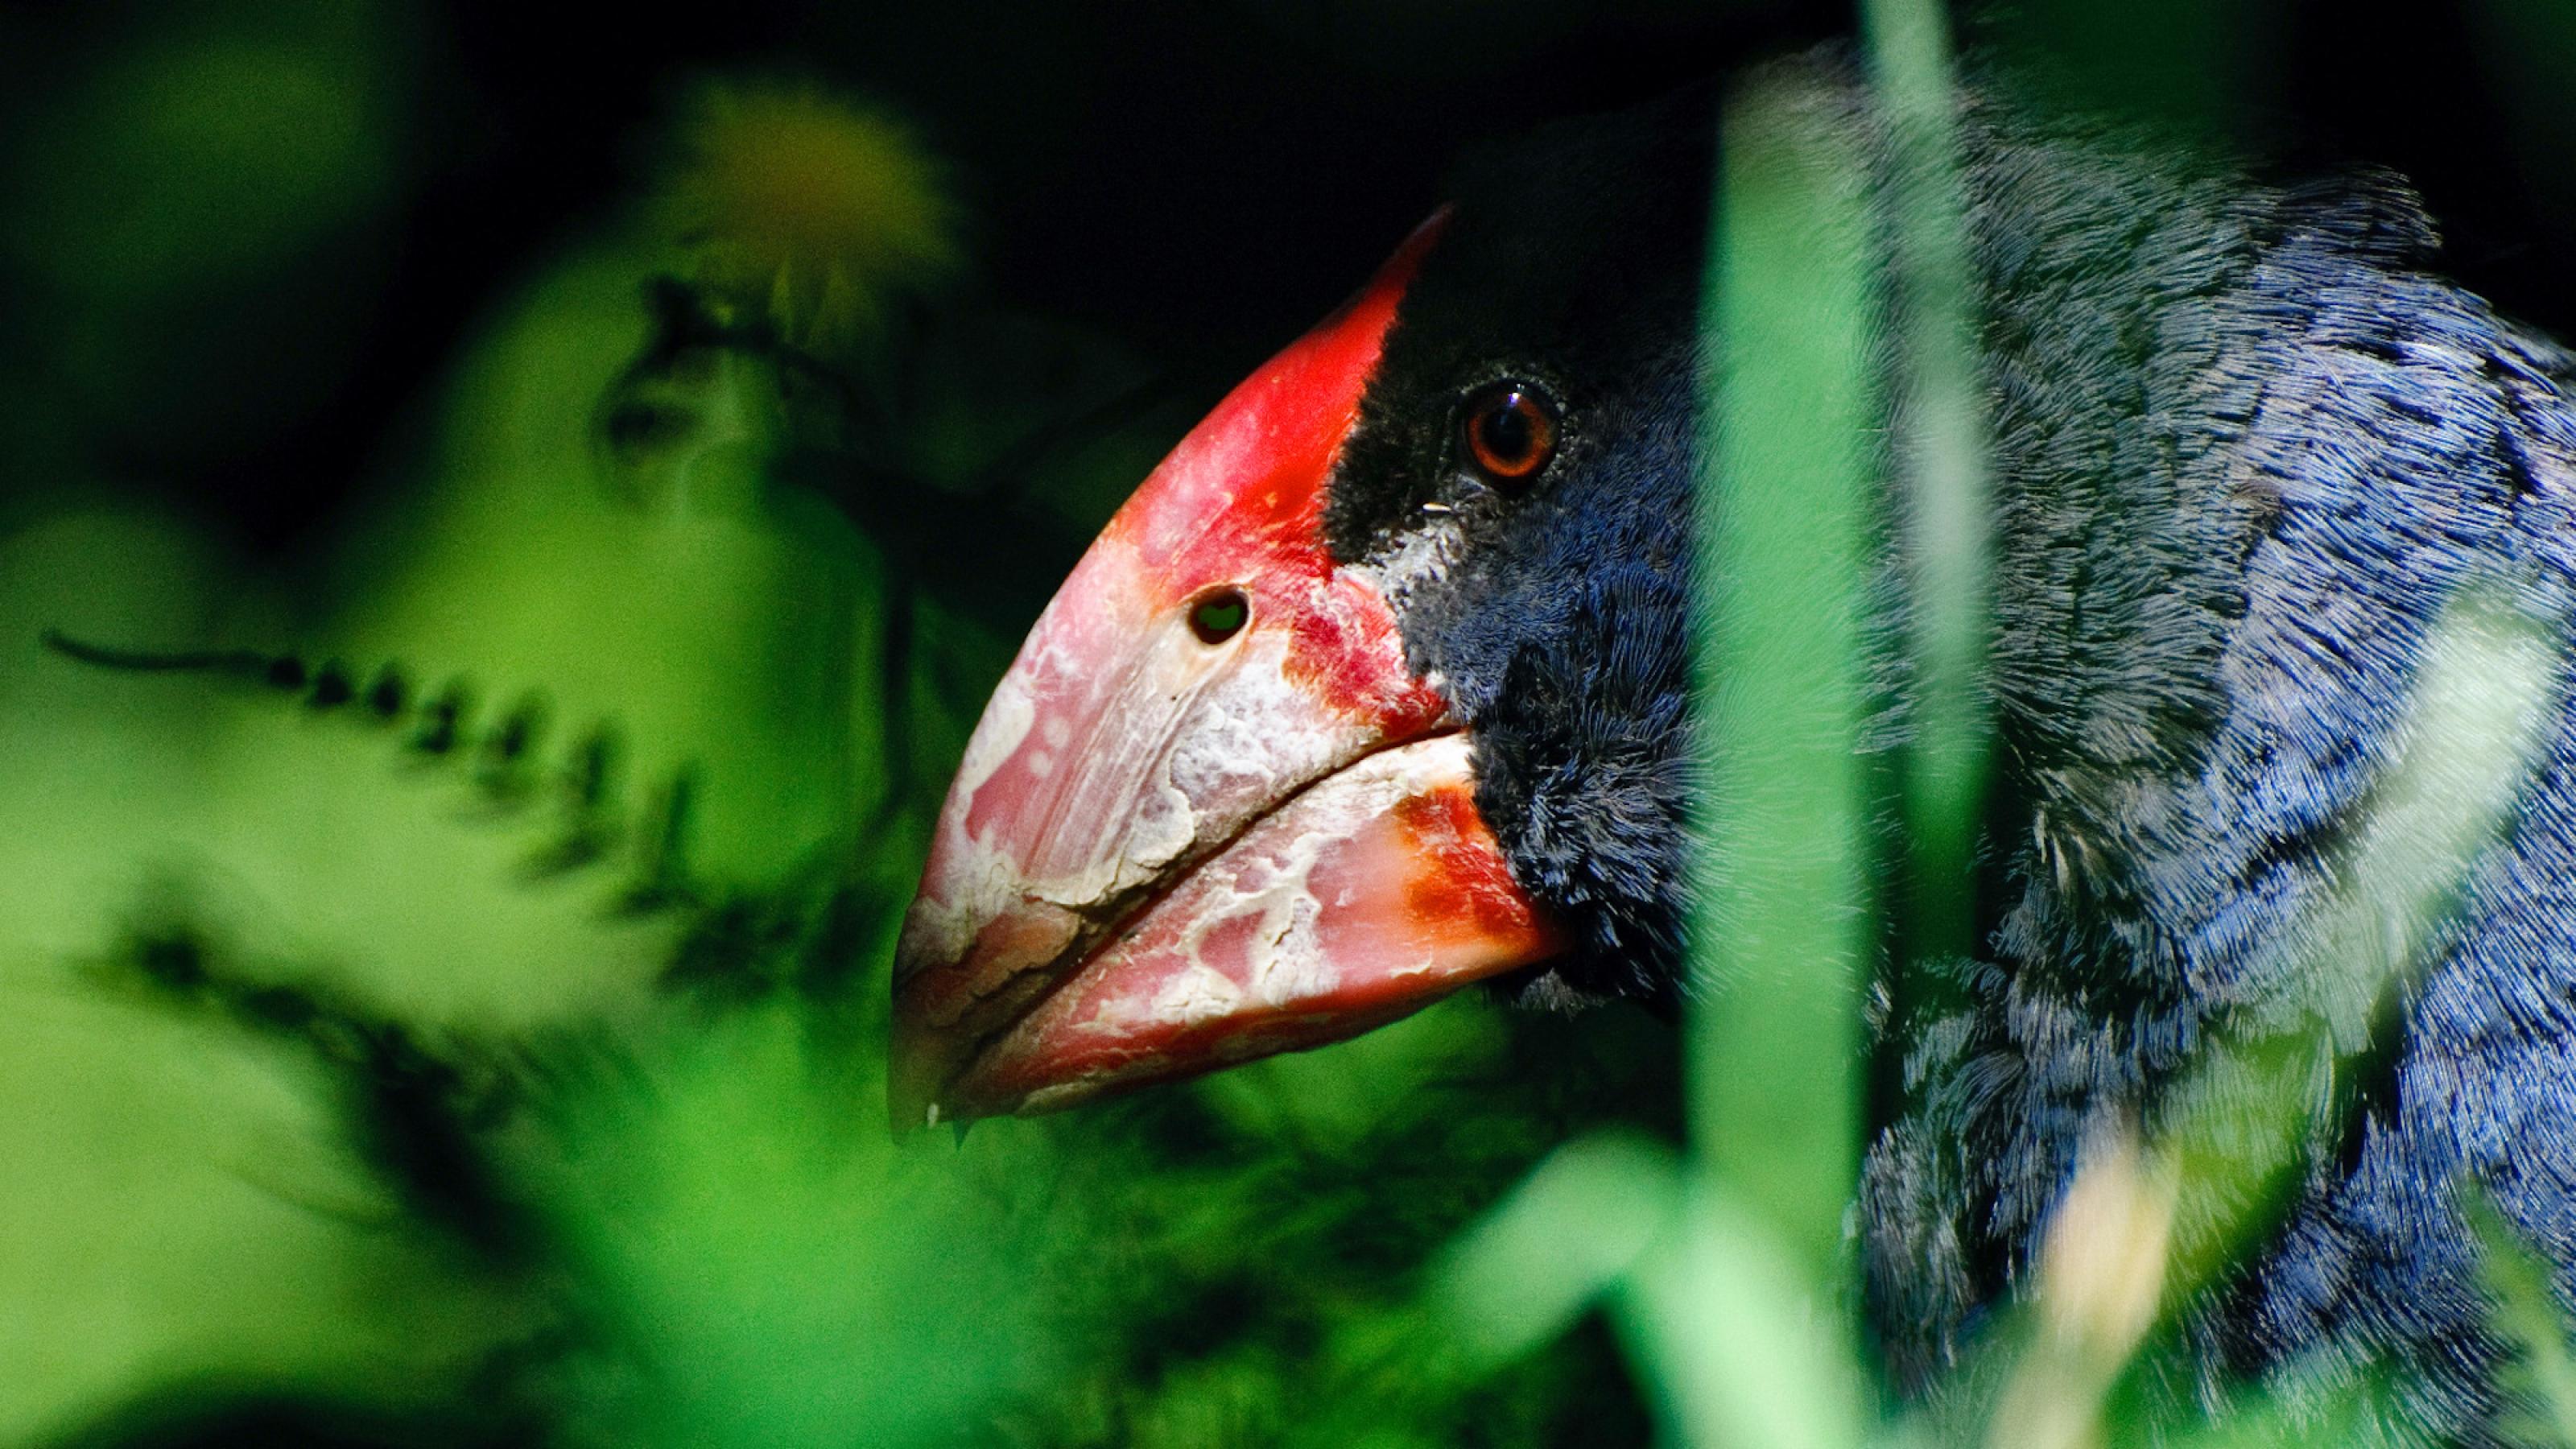 Der Kopf eines blauen Vogel mit großem rotem Schnabel schaut zwischen grünen Grashalmen hervor.